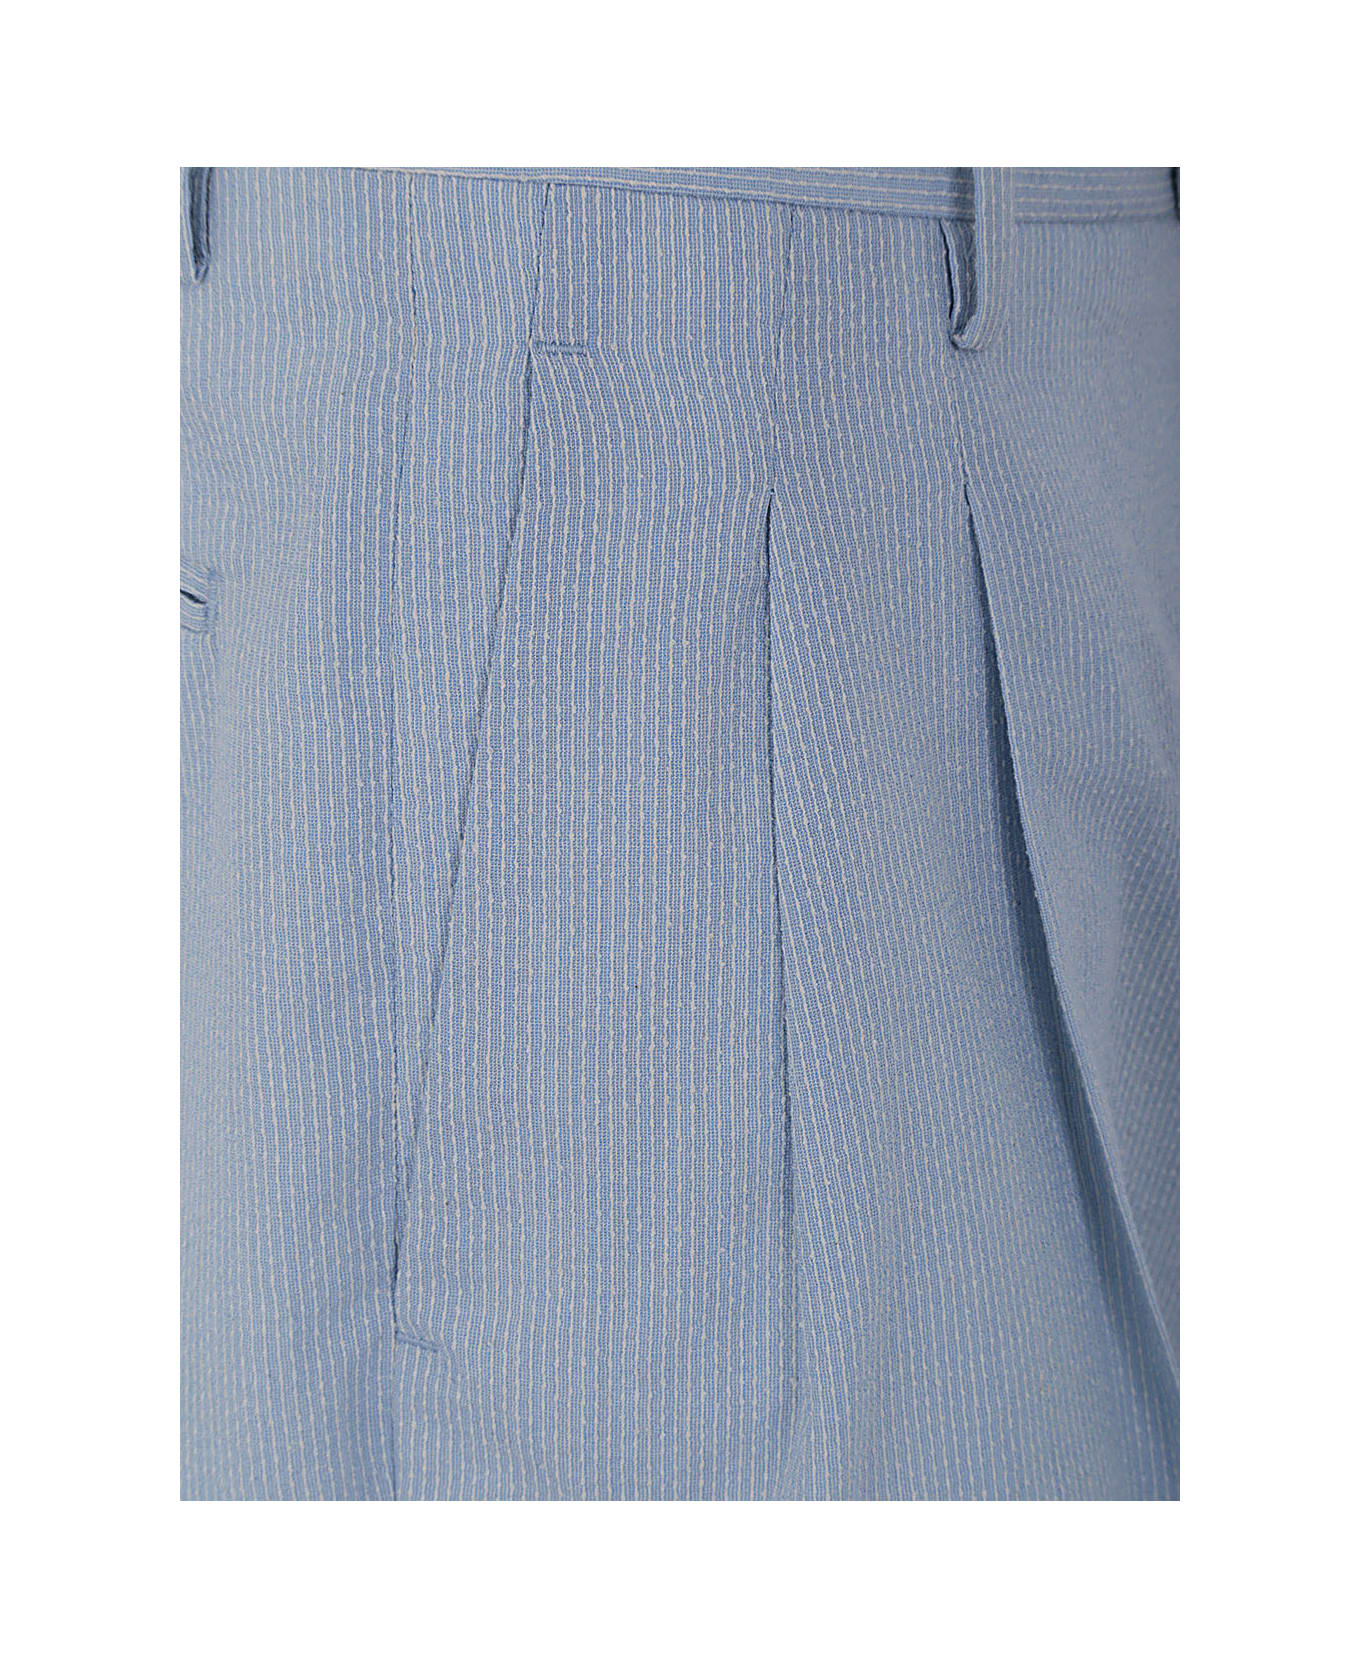 Lardini Shorts - Light Blue